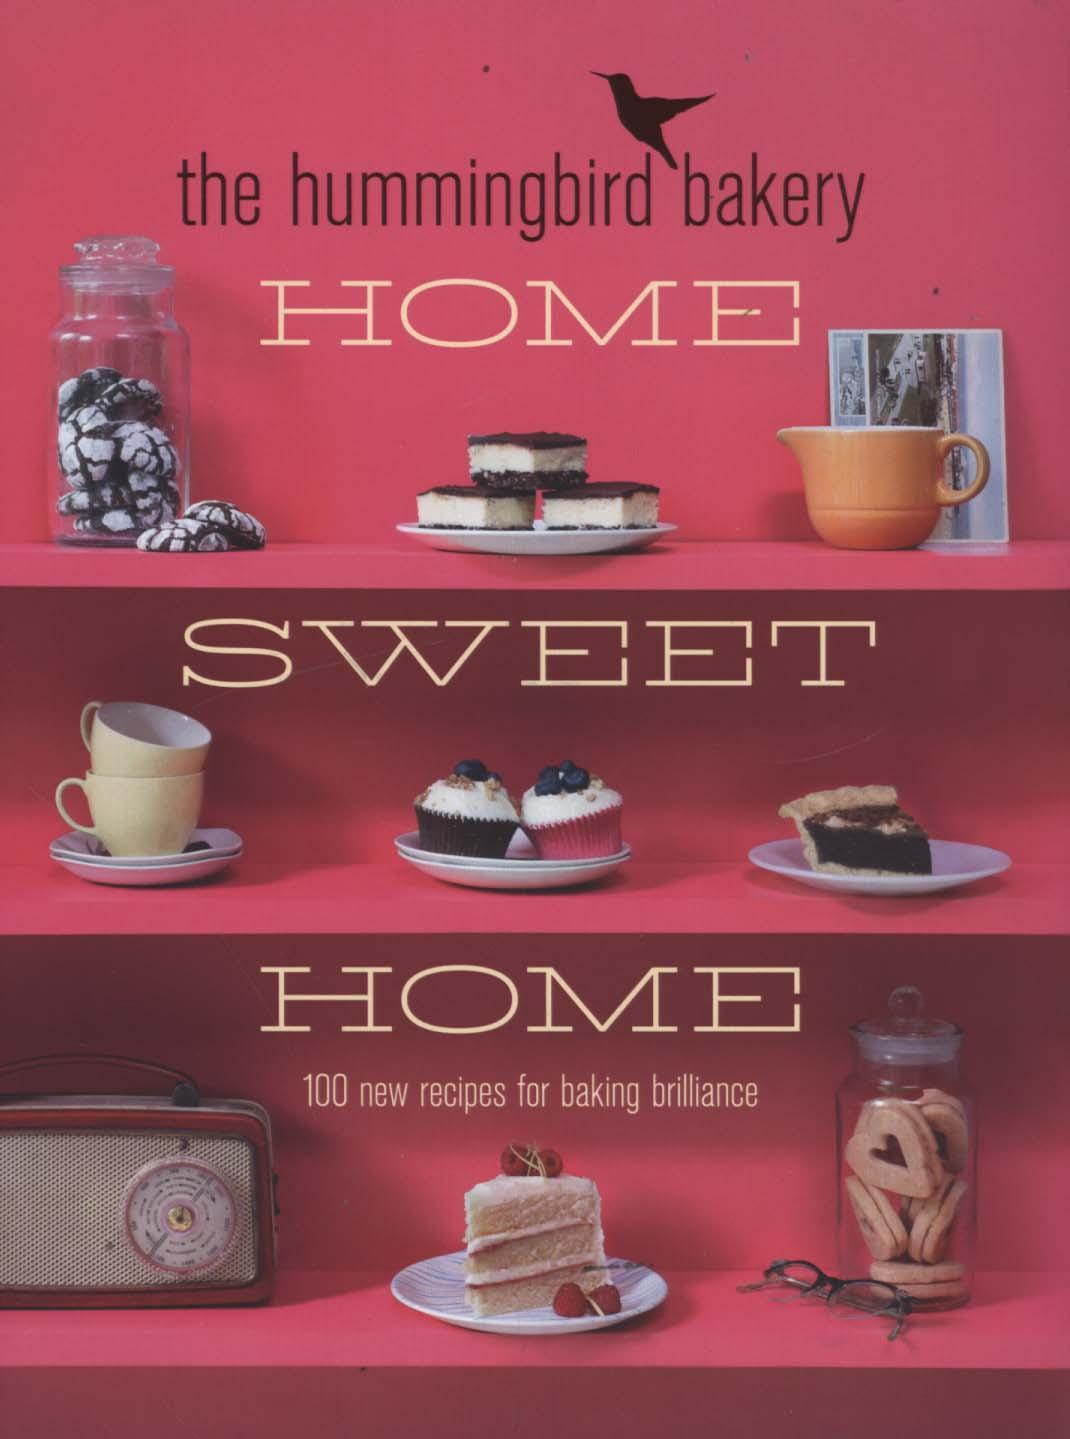 Hummingbird Bakery Home Sweet Home